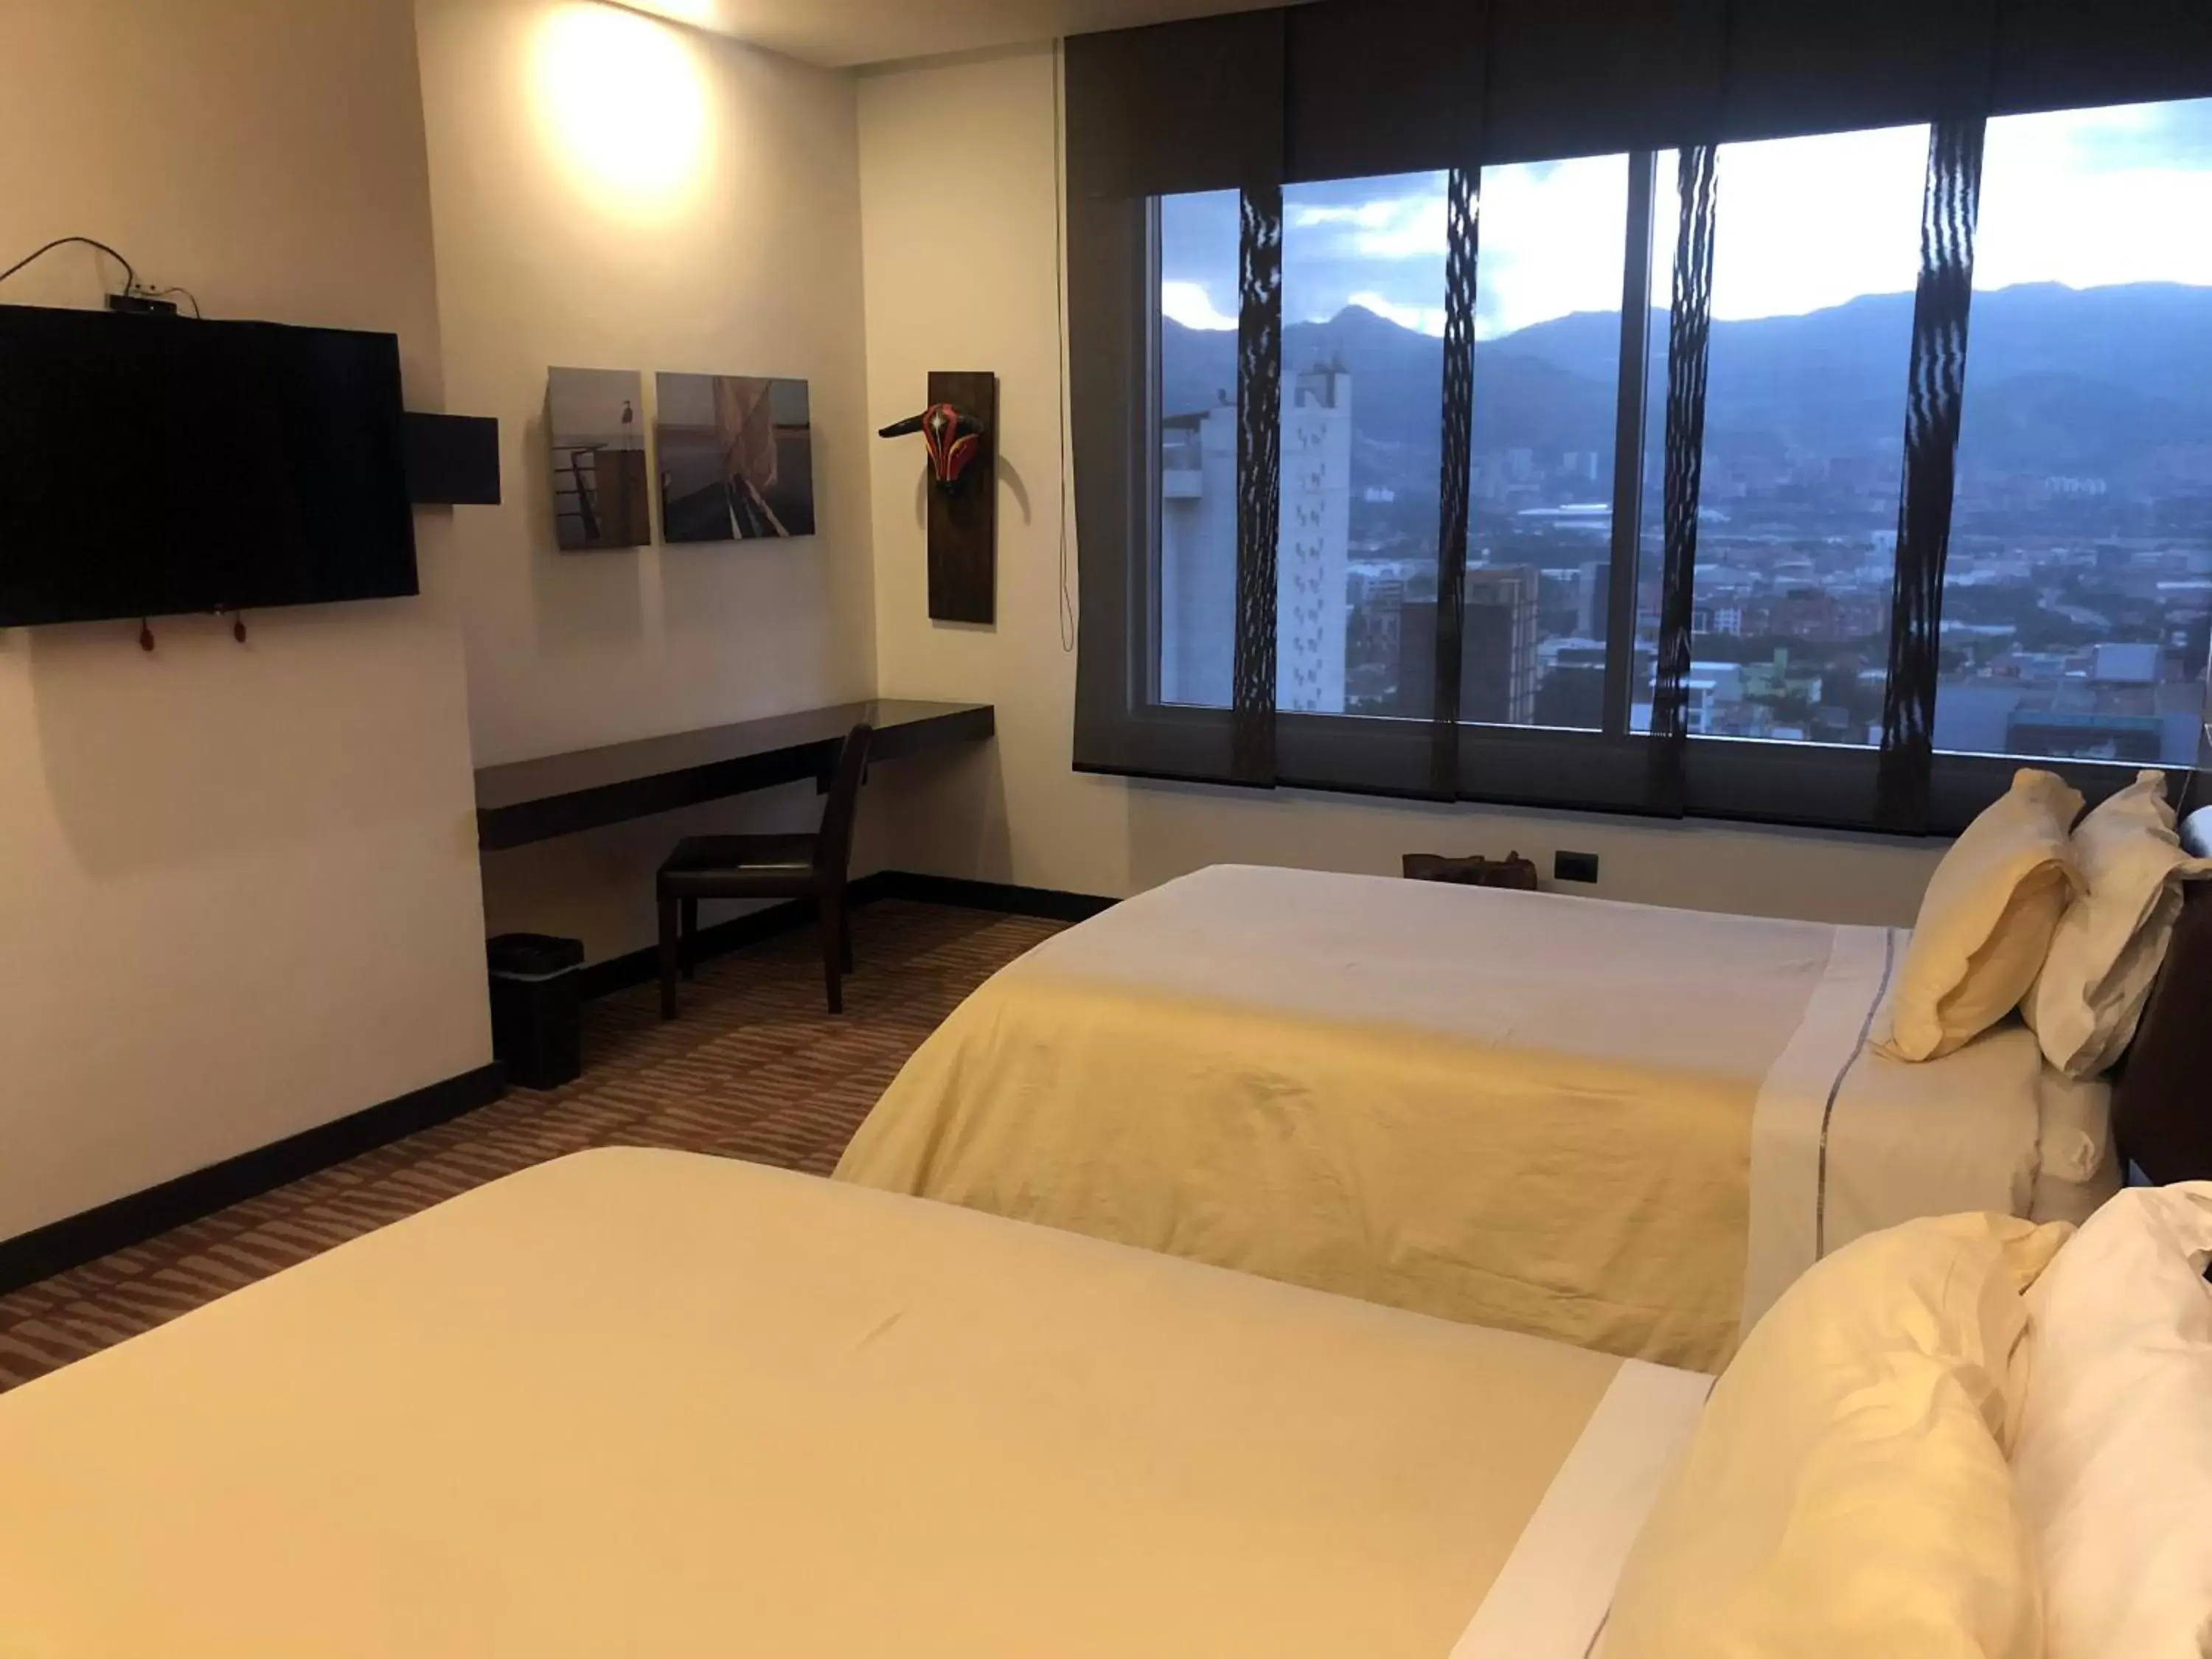 Area and facilities in Diez Hotel Categoría Colombia